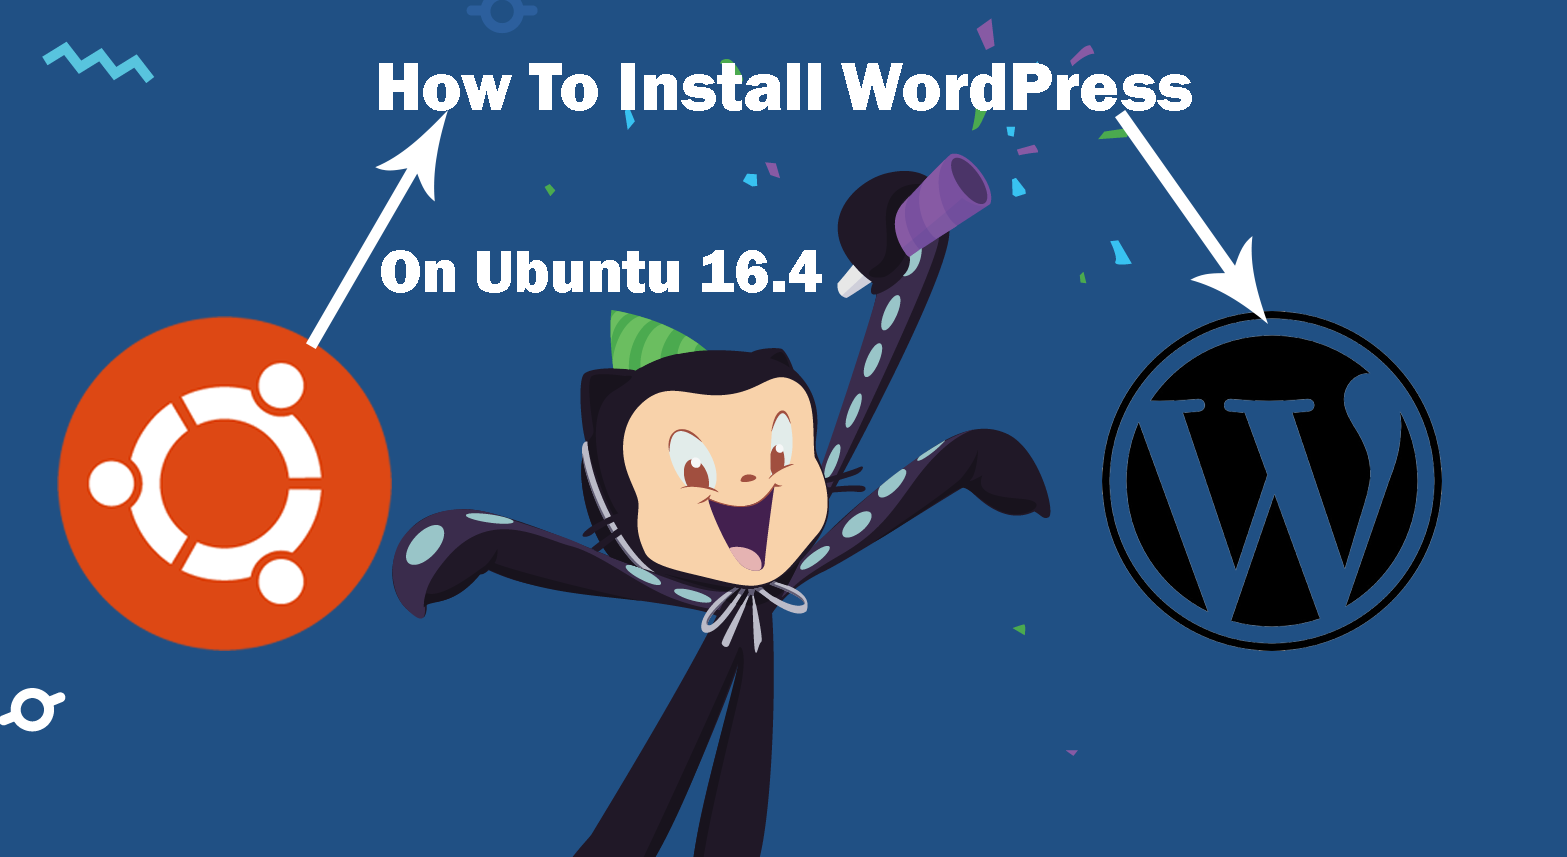 কিভাবে Ubuntu 16.4 এ WordPress ইন্সটল করবেন?